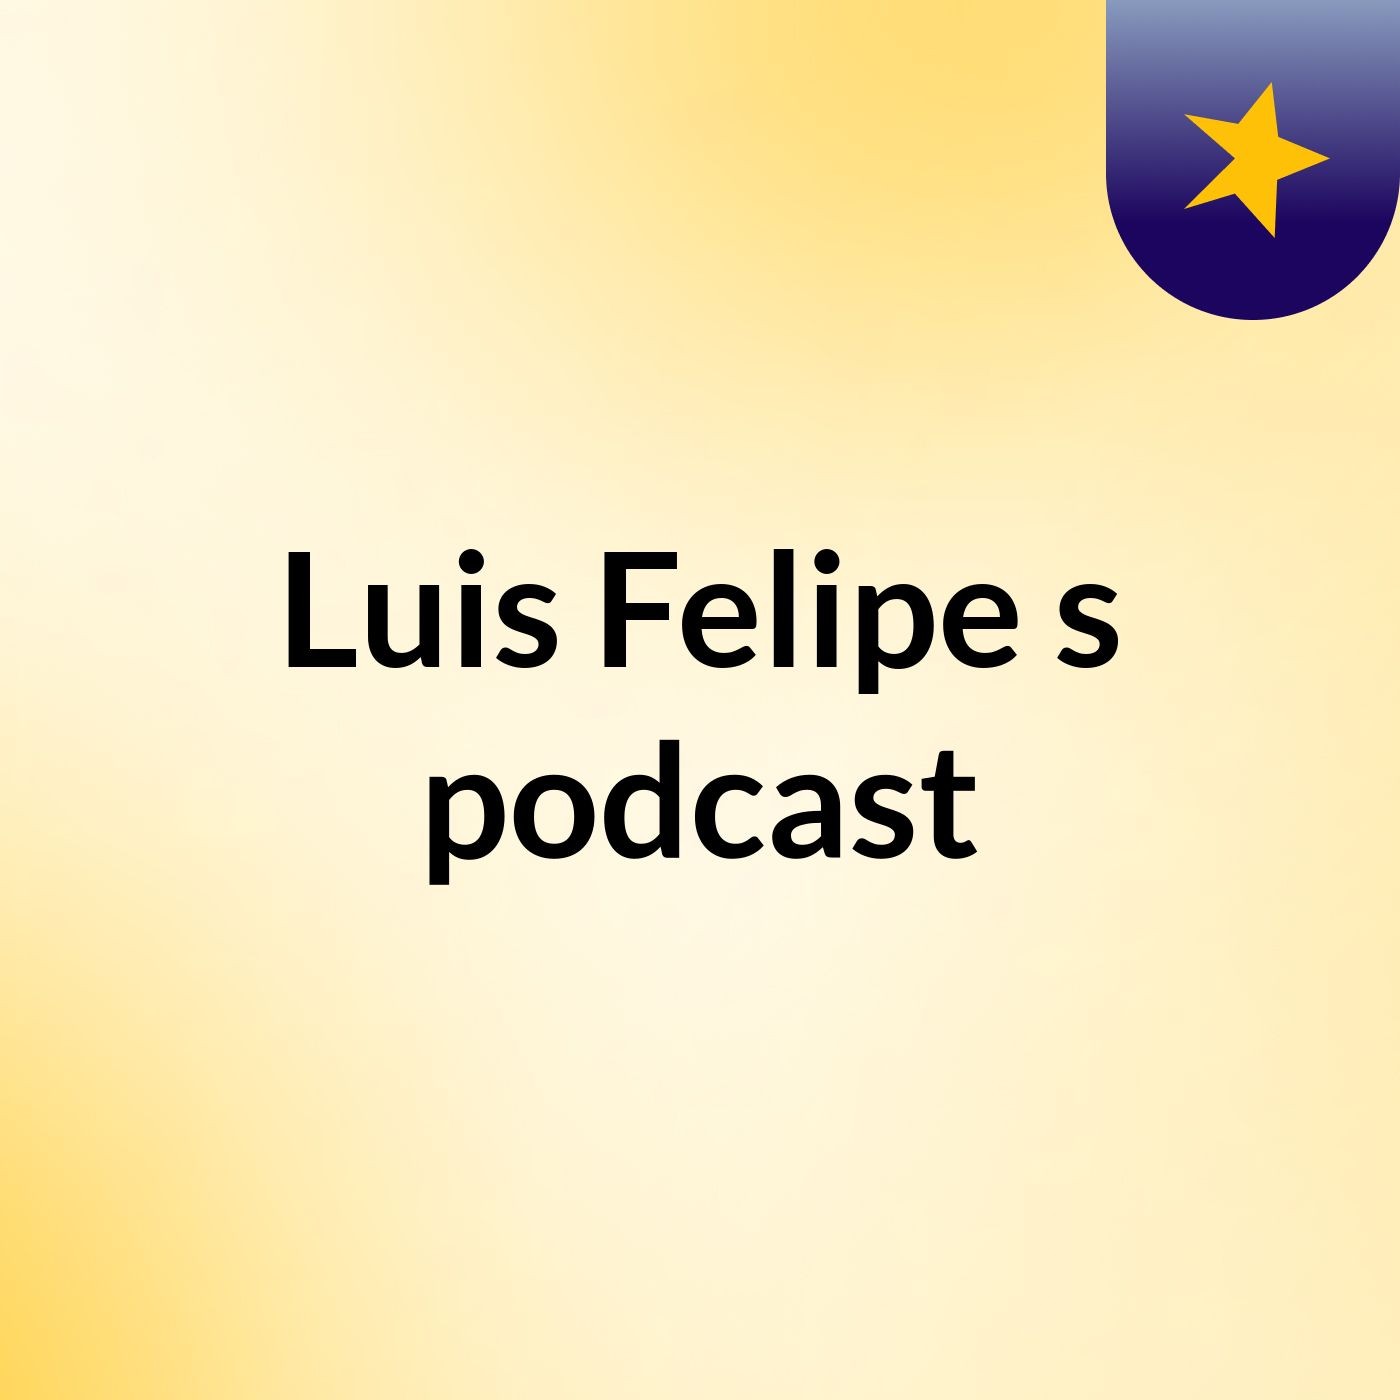 Luis Felipe's podcast